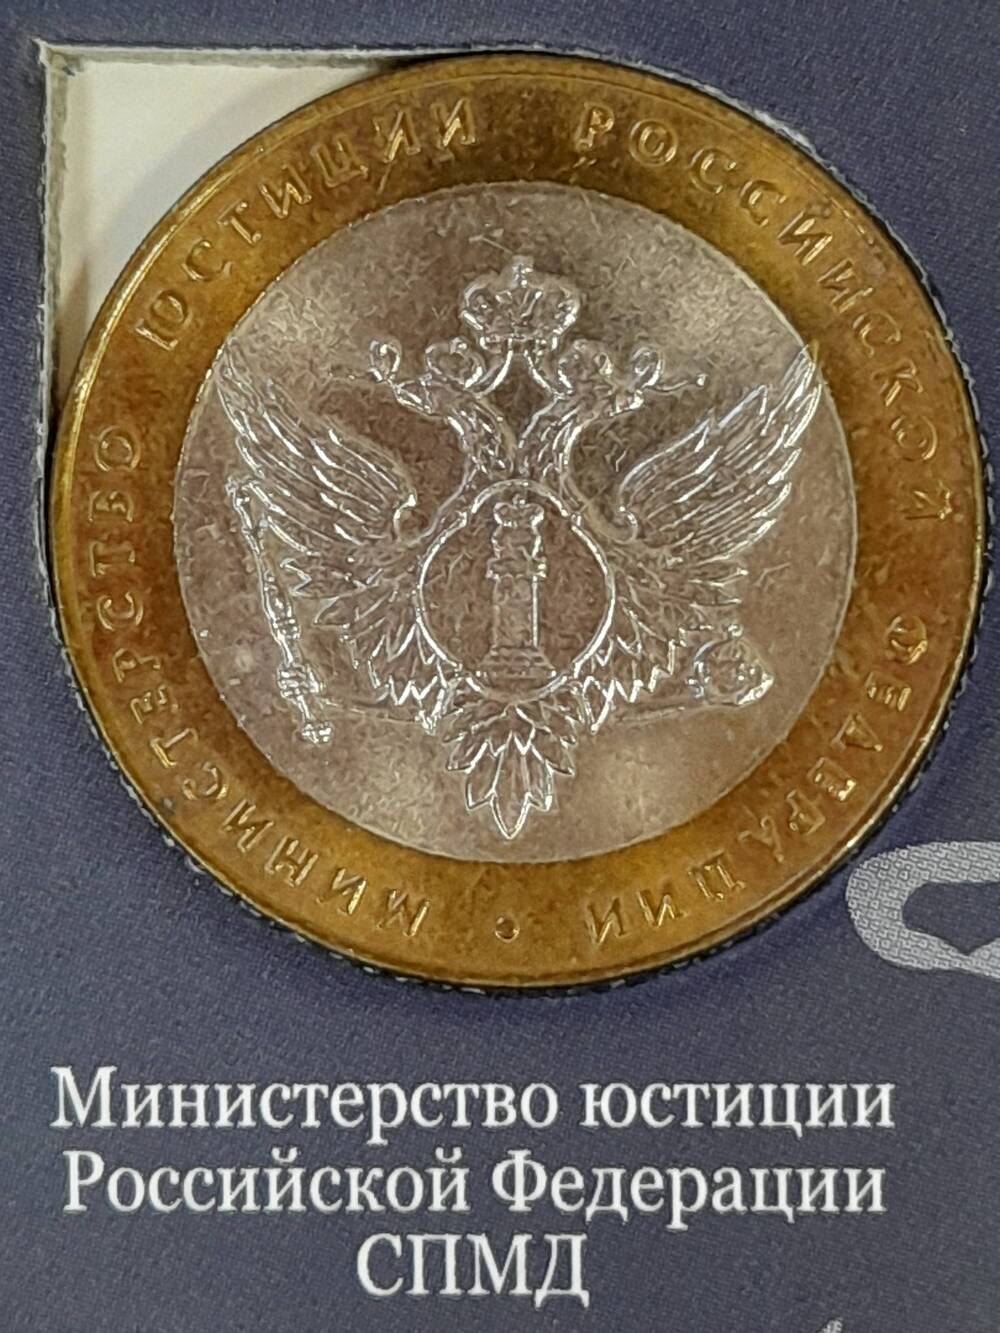 Монета памятная 10 РУБЛЕЙ. Министерство Юстиции Российской Федерации 2002 г. Россия